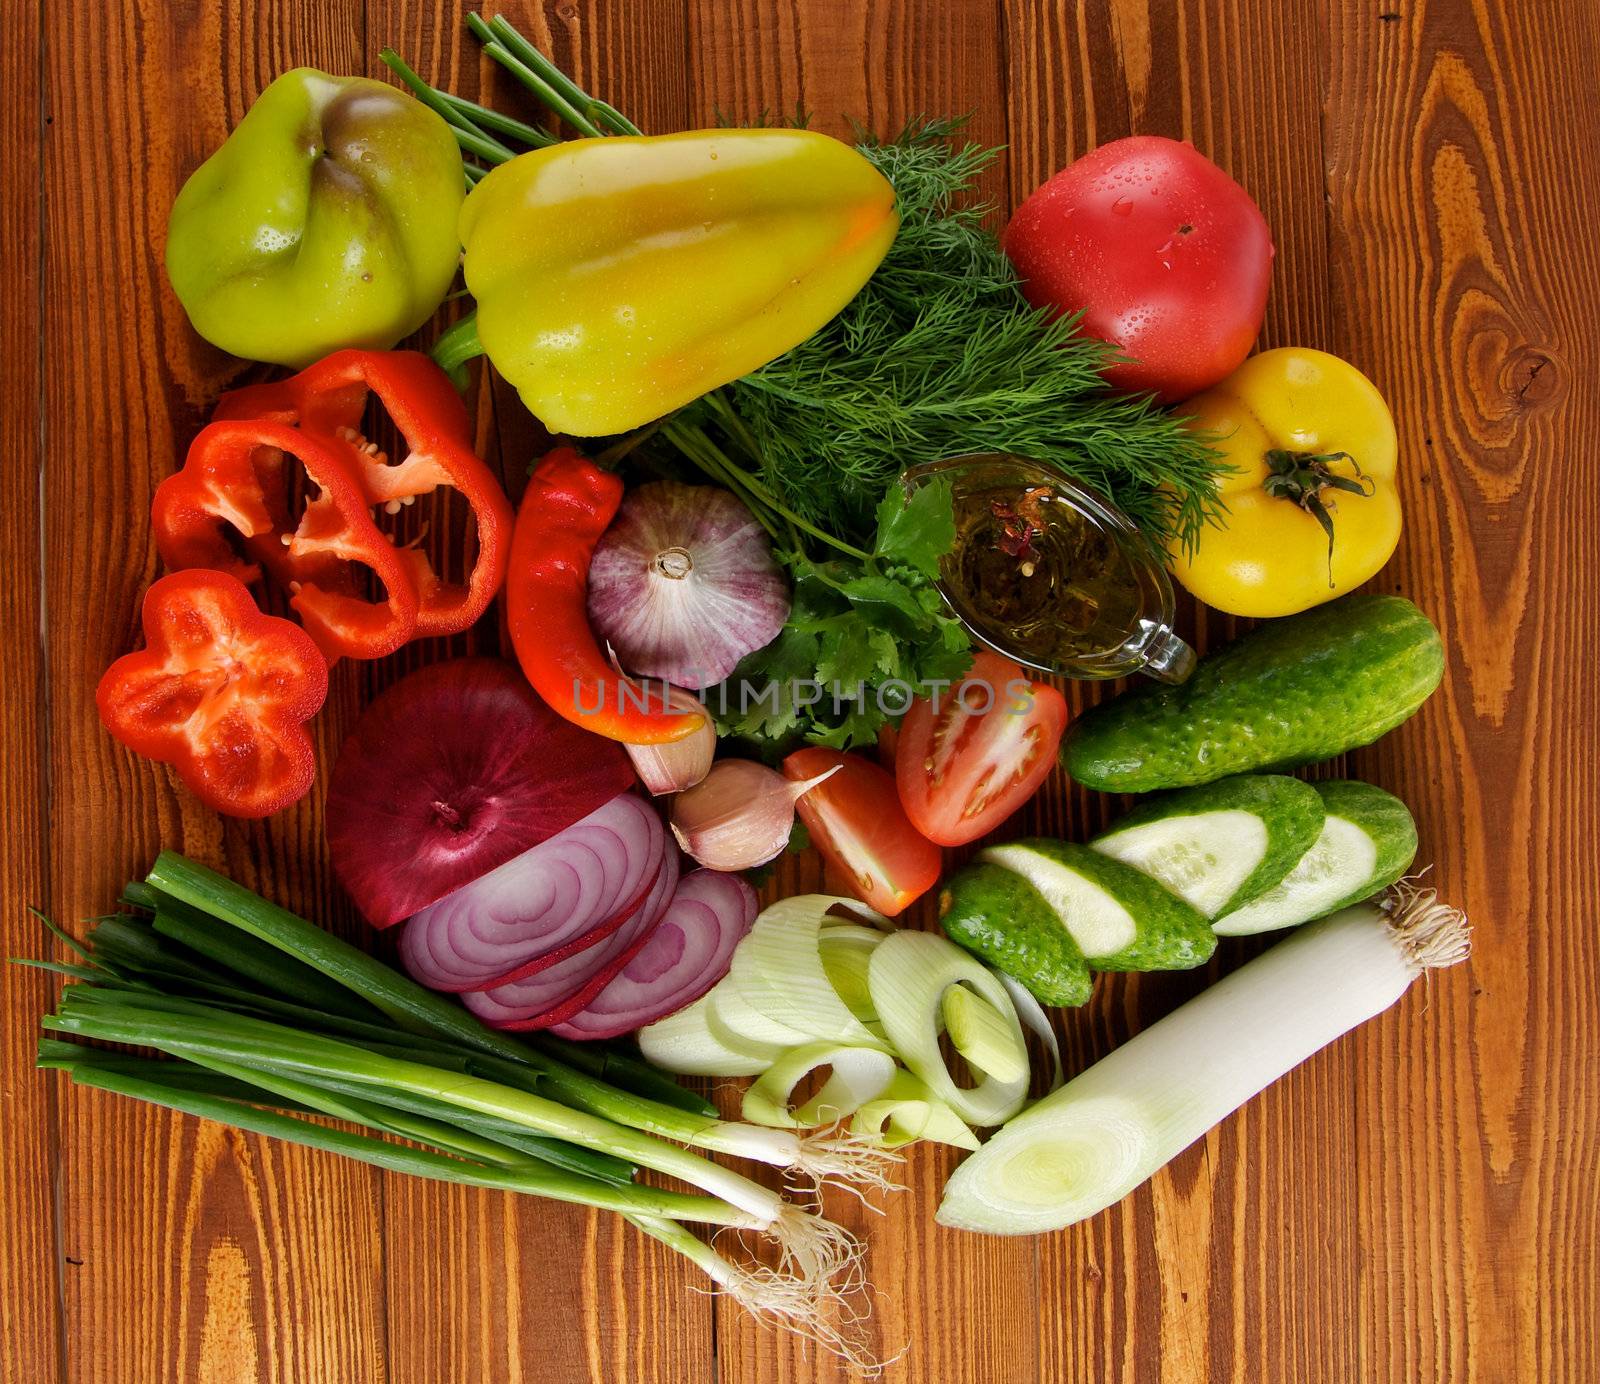 Ingredients of Vegetable Salad by zhekos